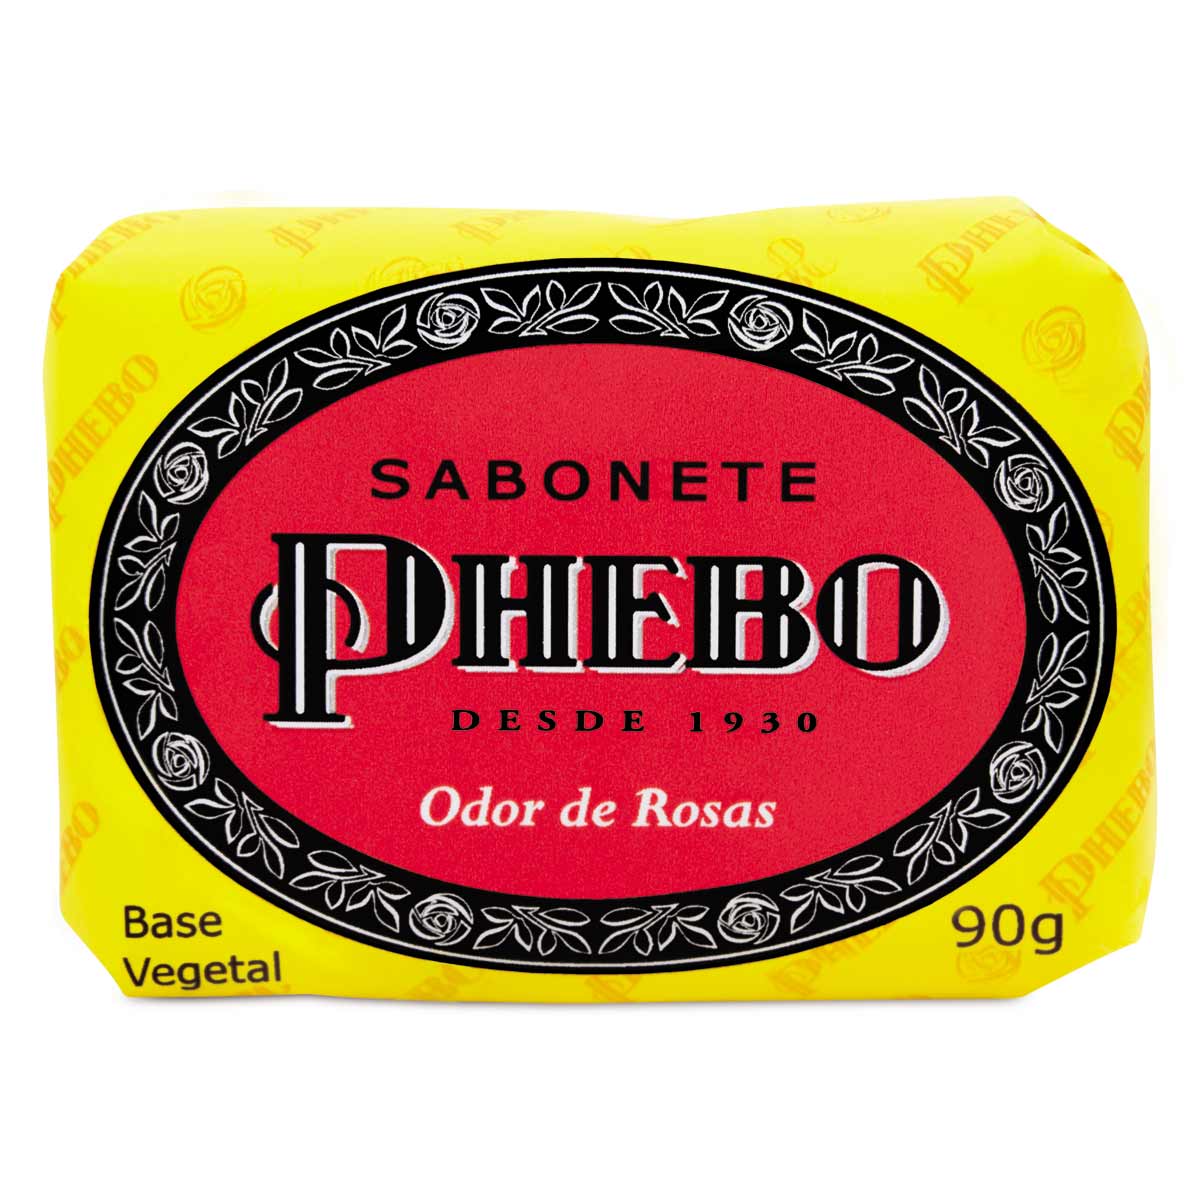 Sabonete de Glicerina PHEBO Odor de Rosas 90g